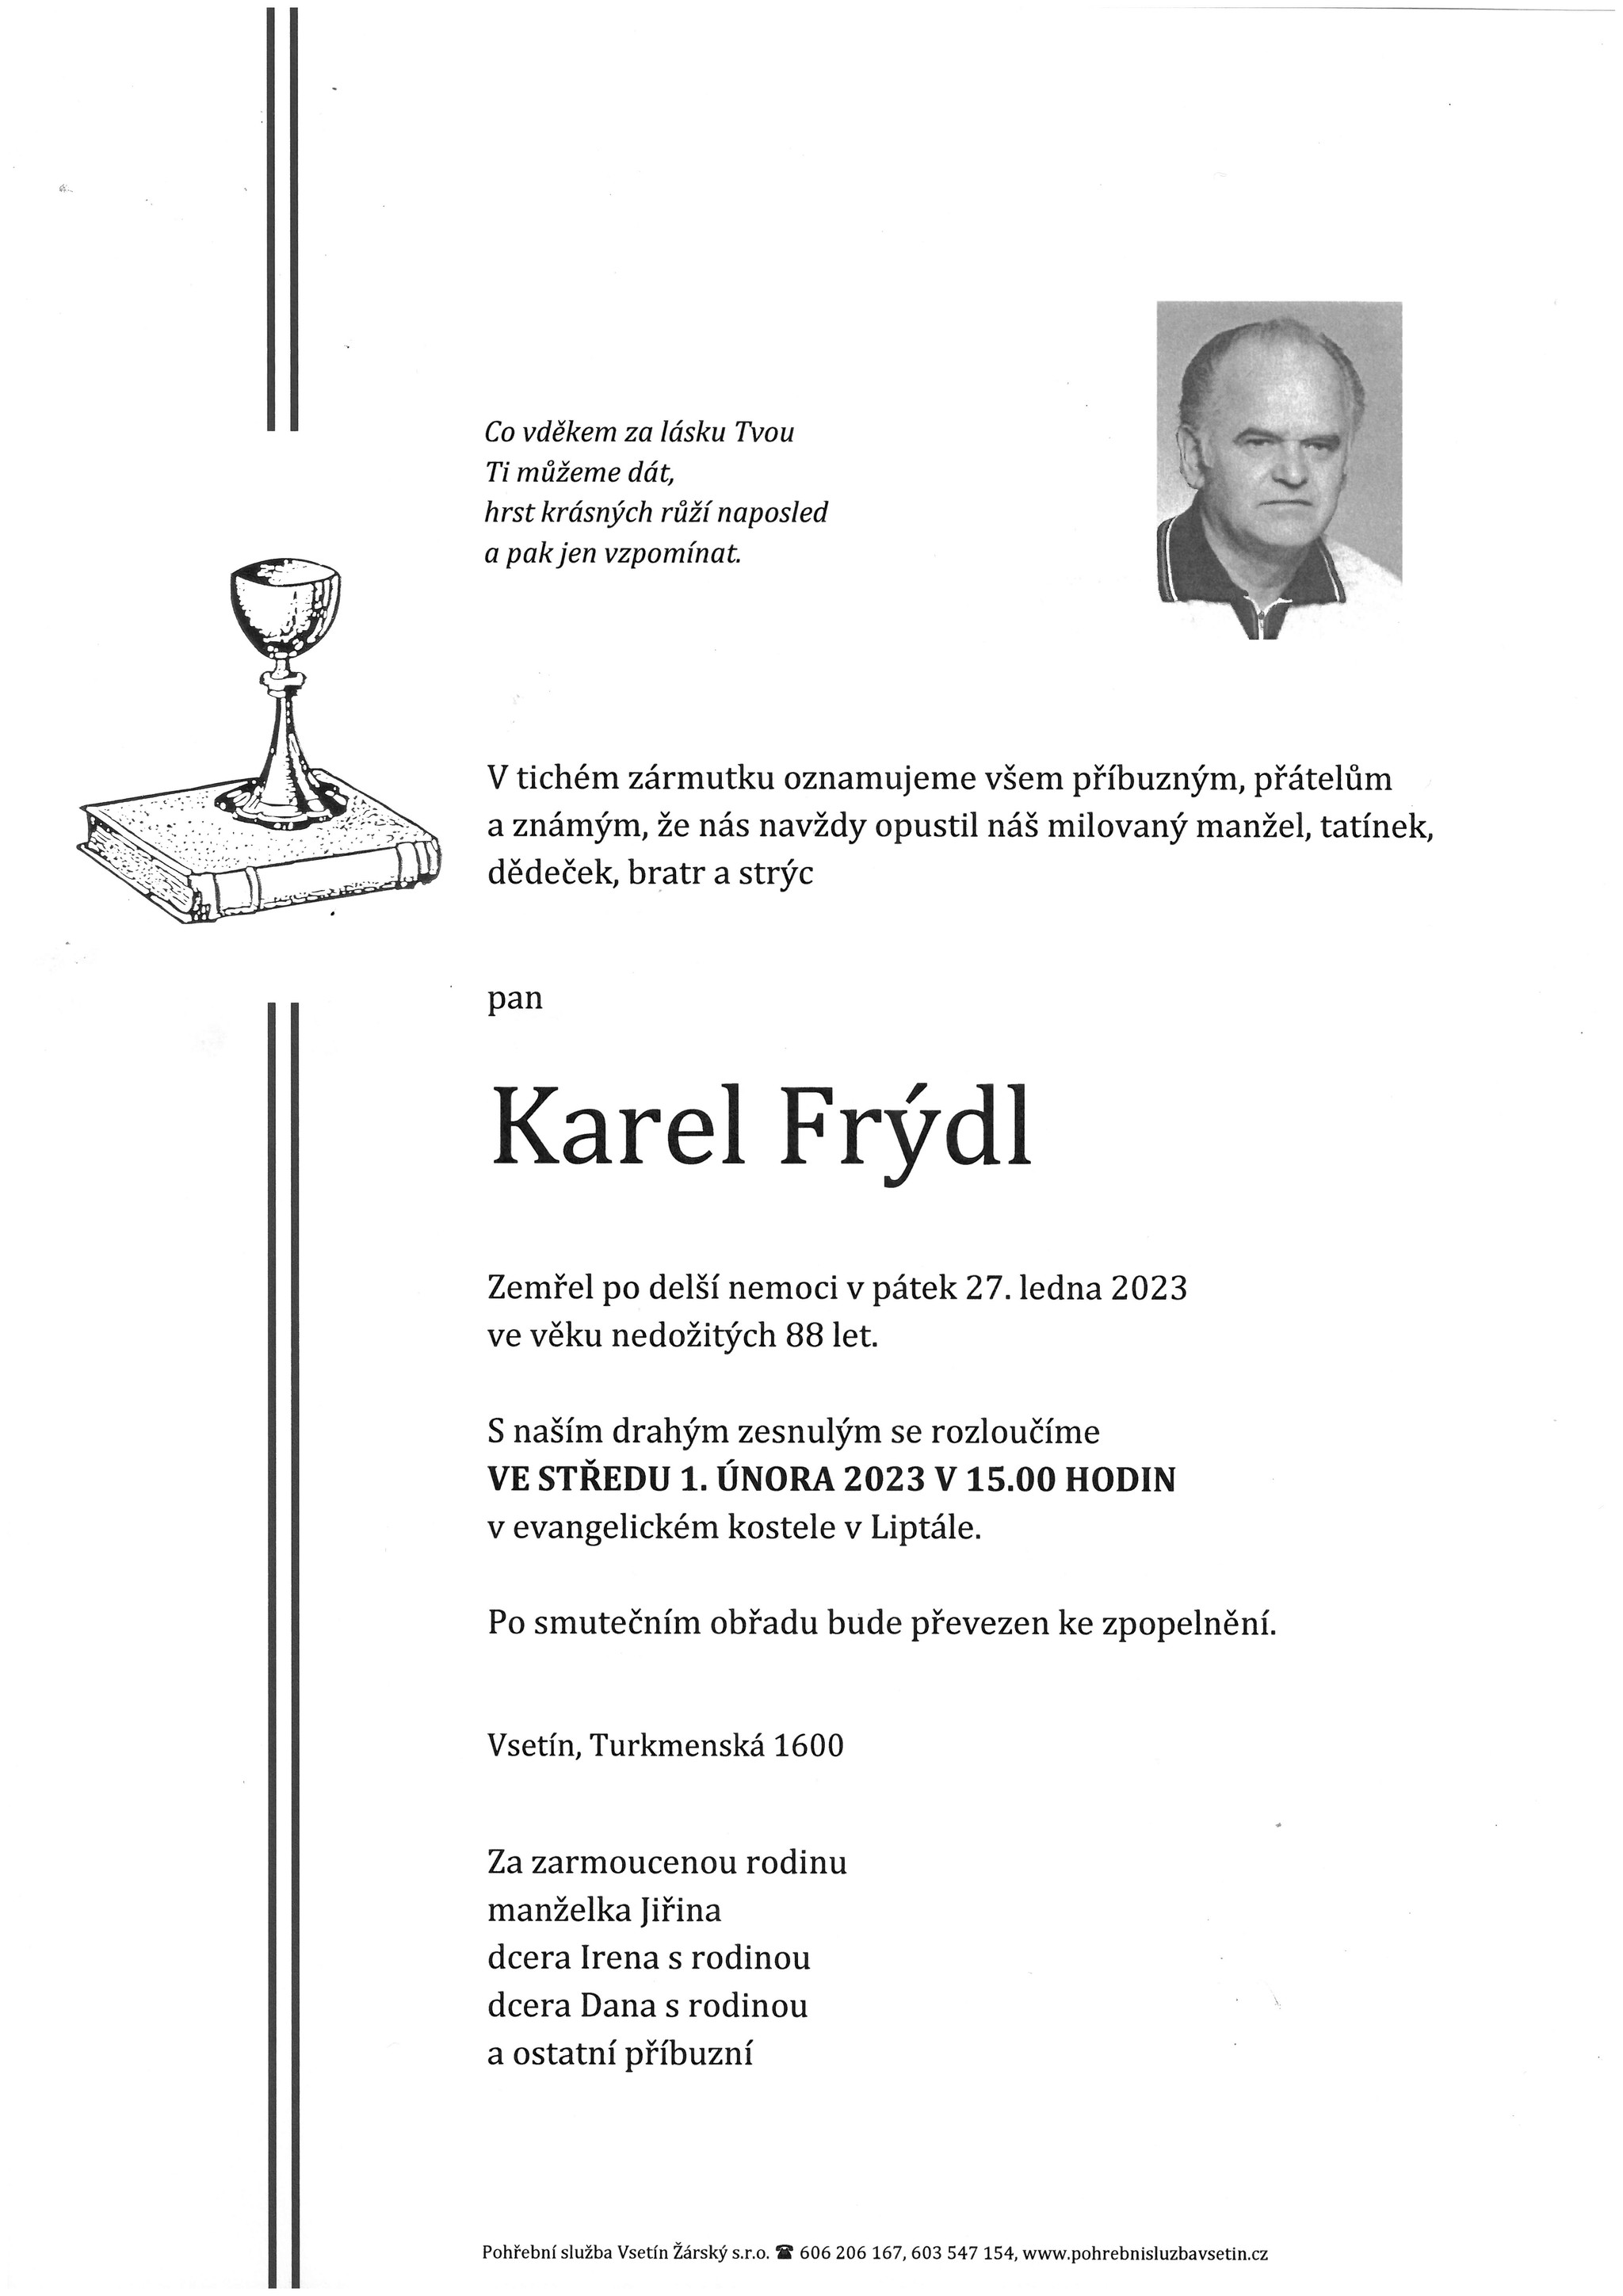 Karel Frýdl